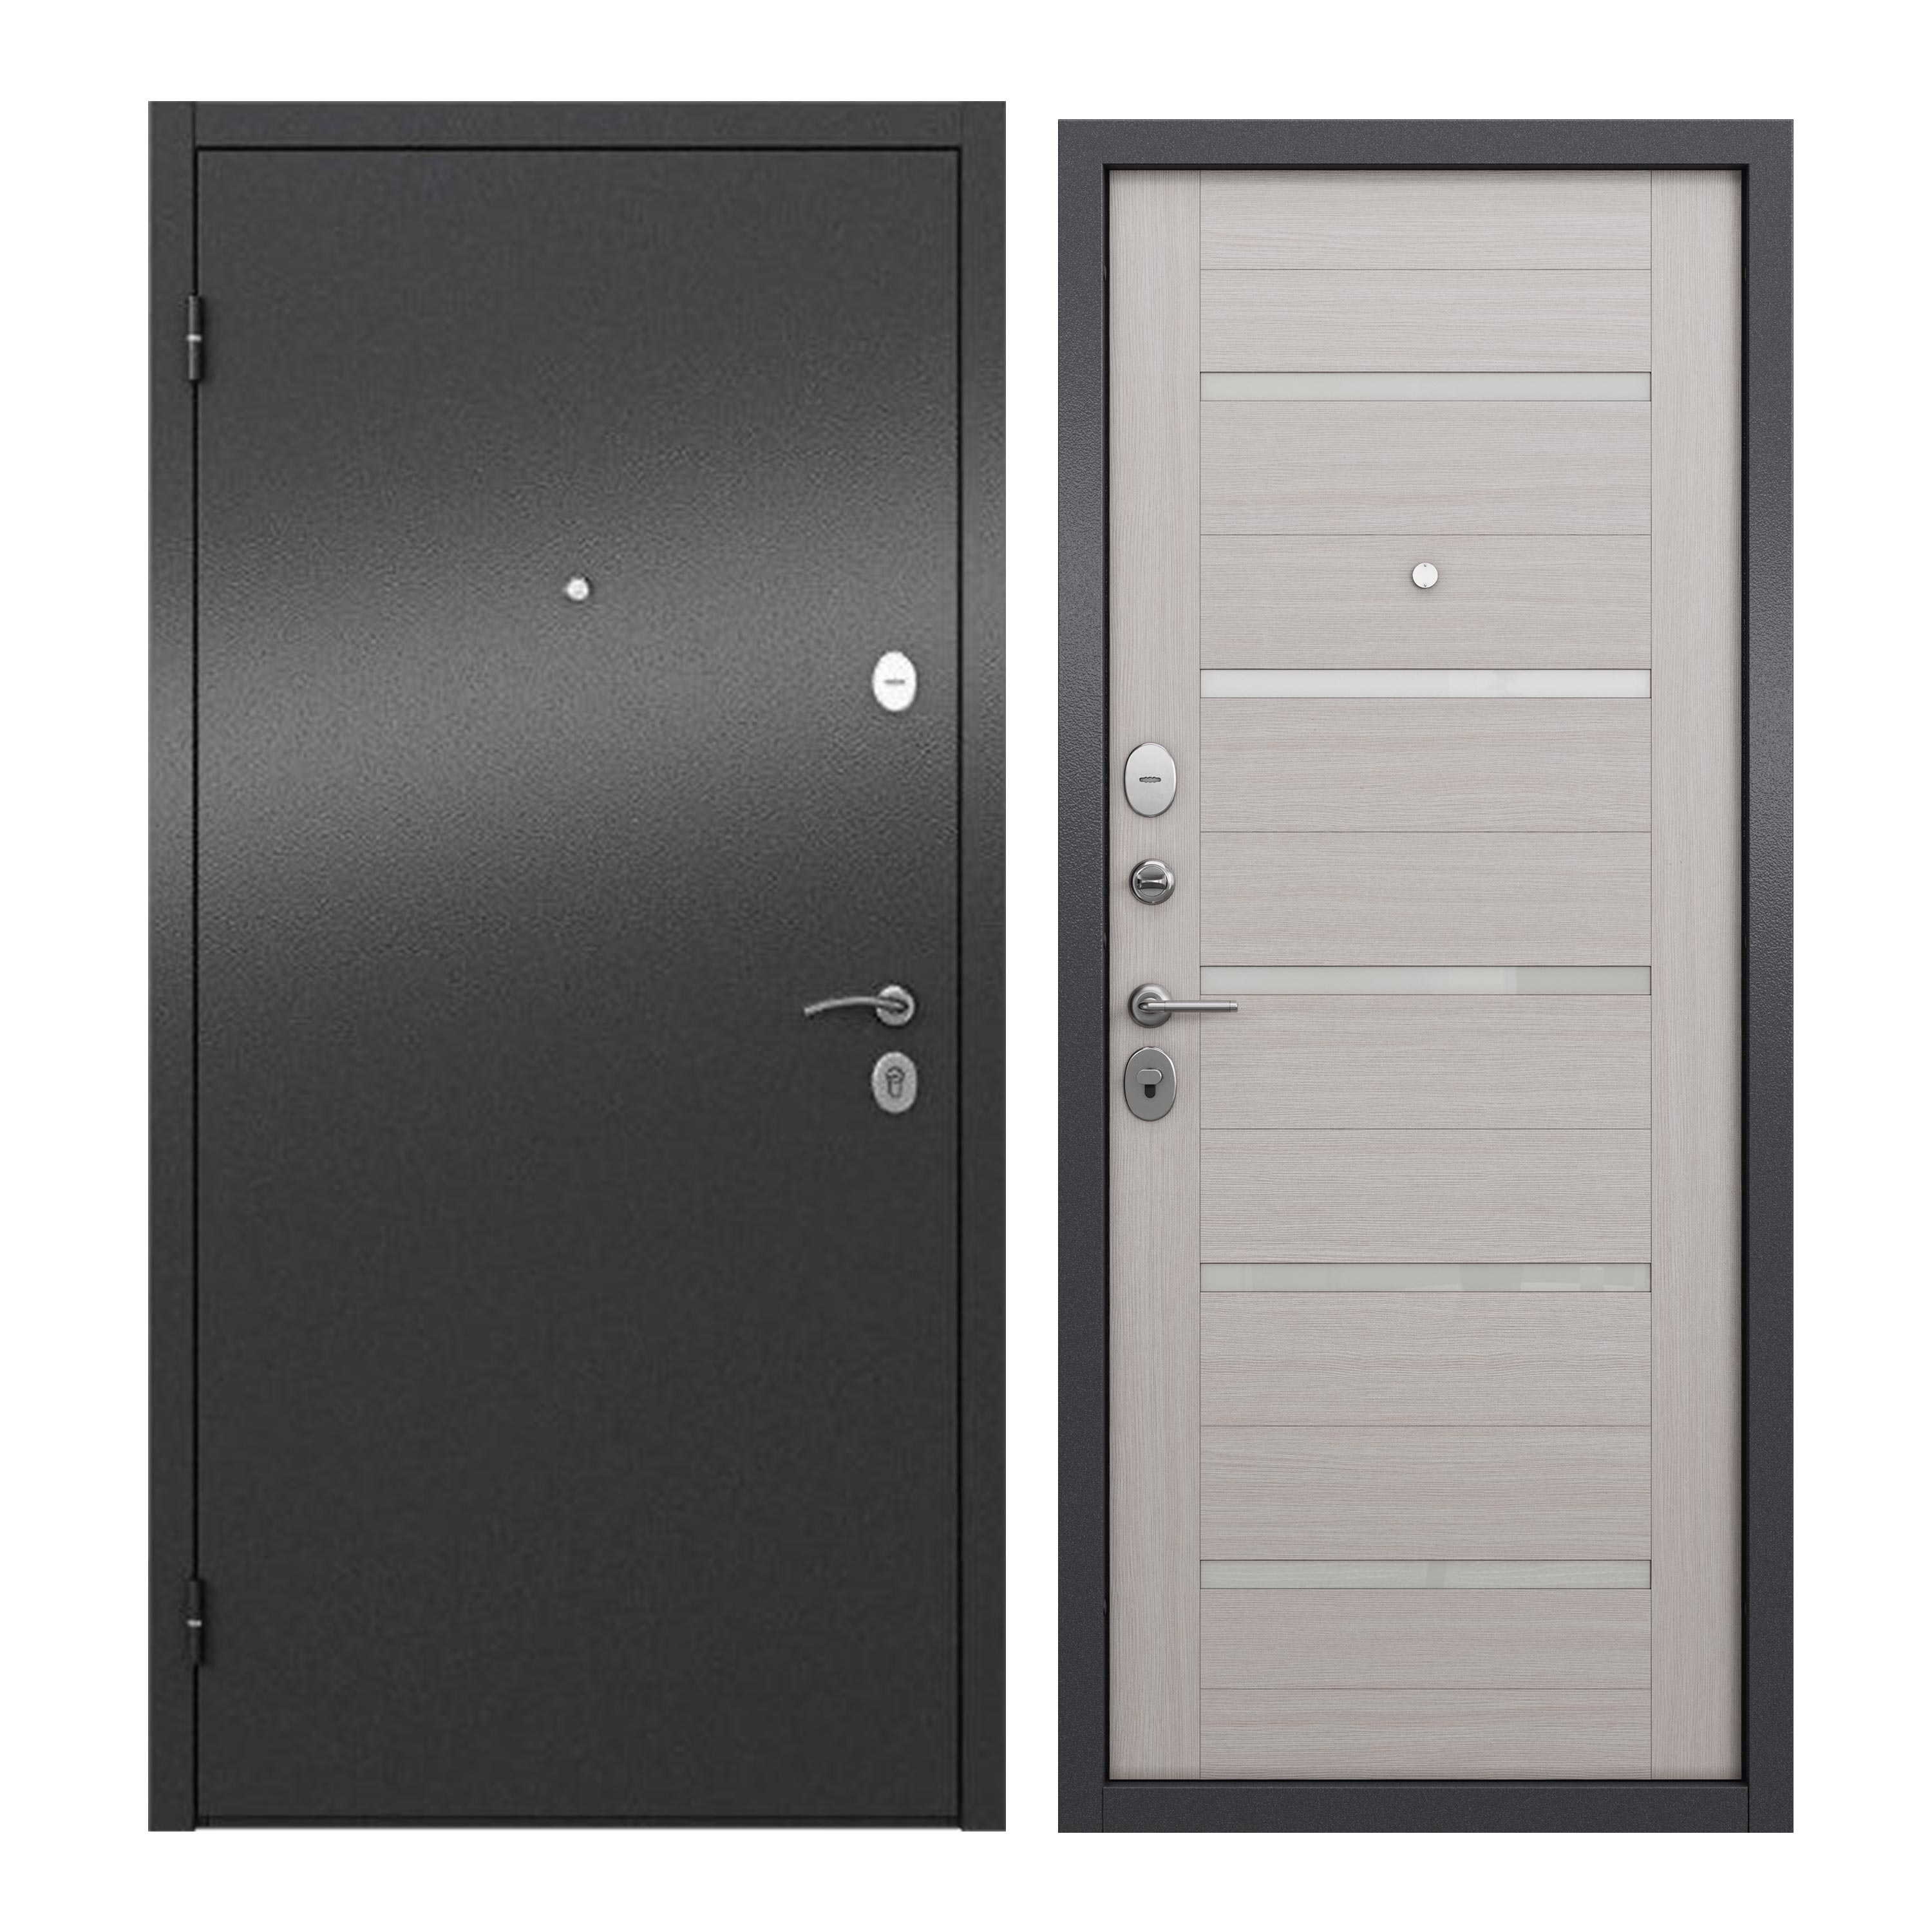 Дверь входная для квартиры ProLine металлическая Apartment X 960х2050, левая, серый дверь входная buldoors ютта левая букле шоколад ларче бьянко с зеркалом 860х2050 мм